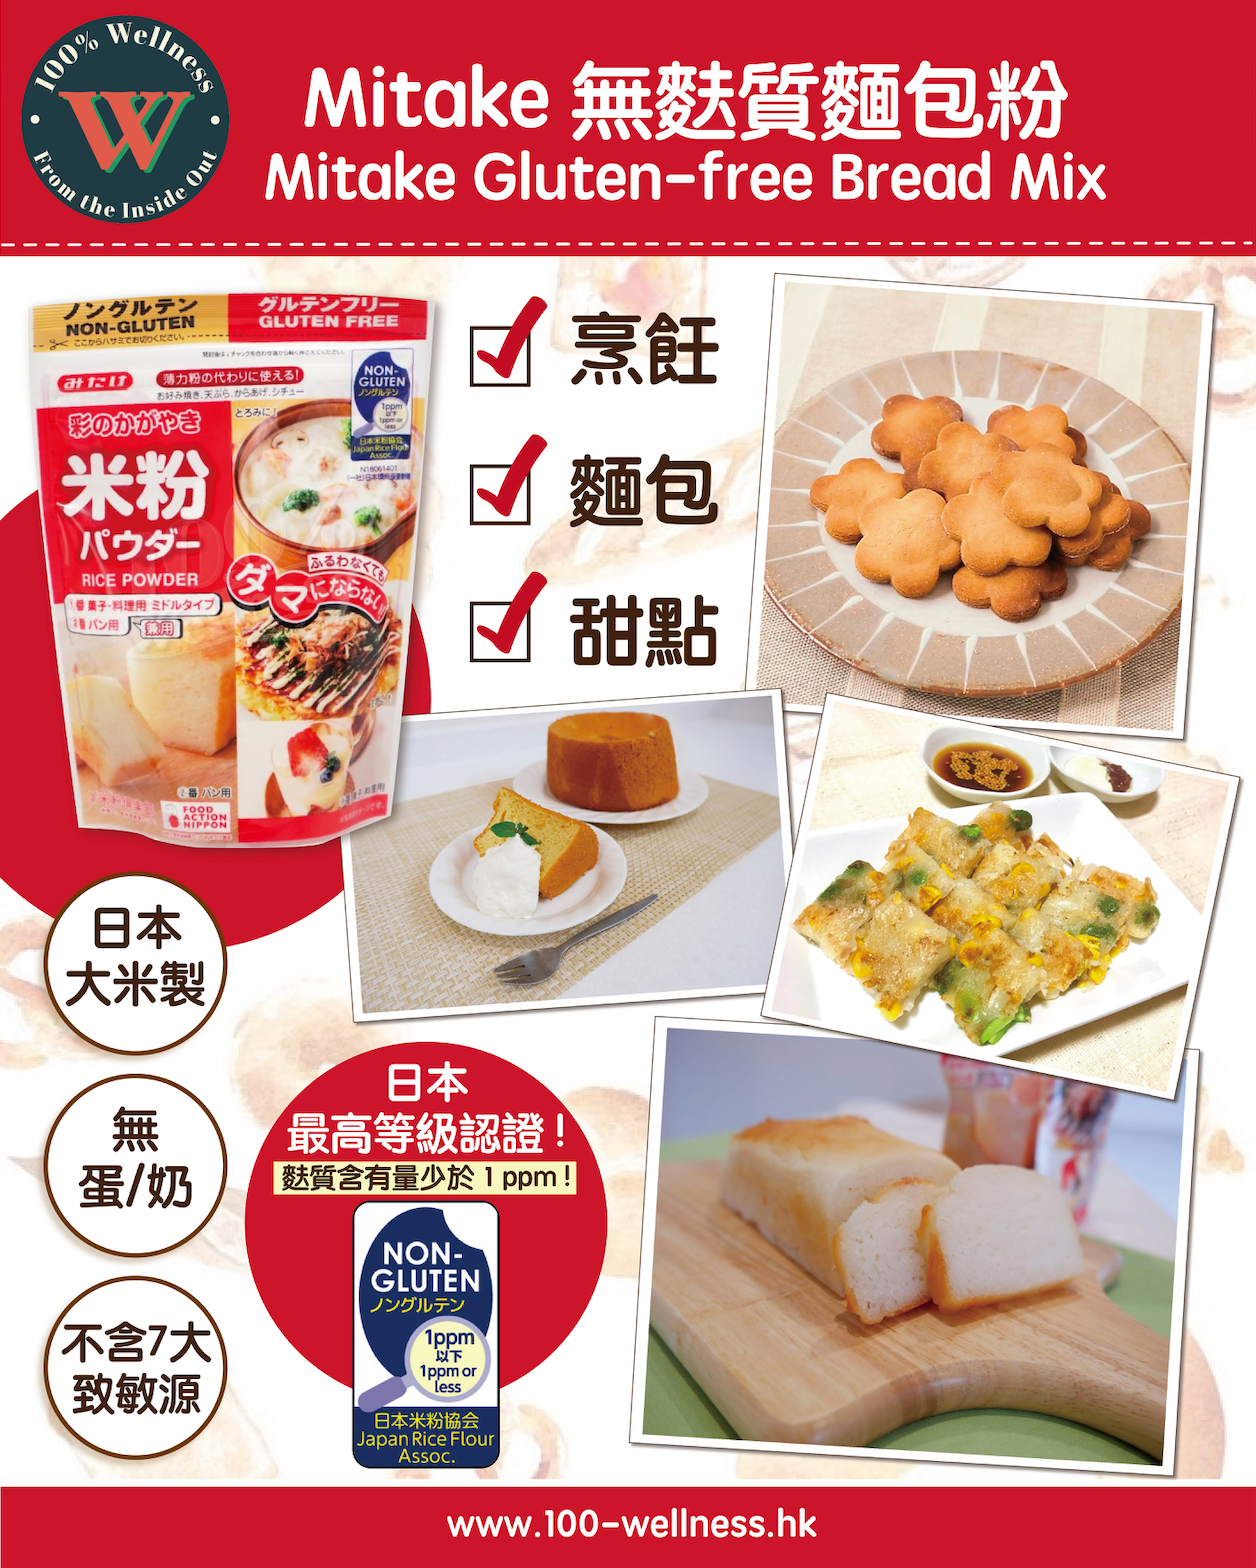 Mitake Gluten-free Bread Mix [300g]